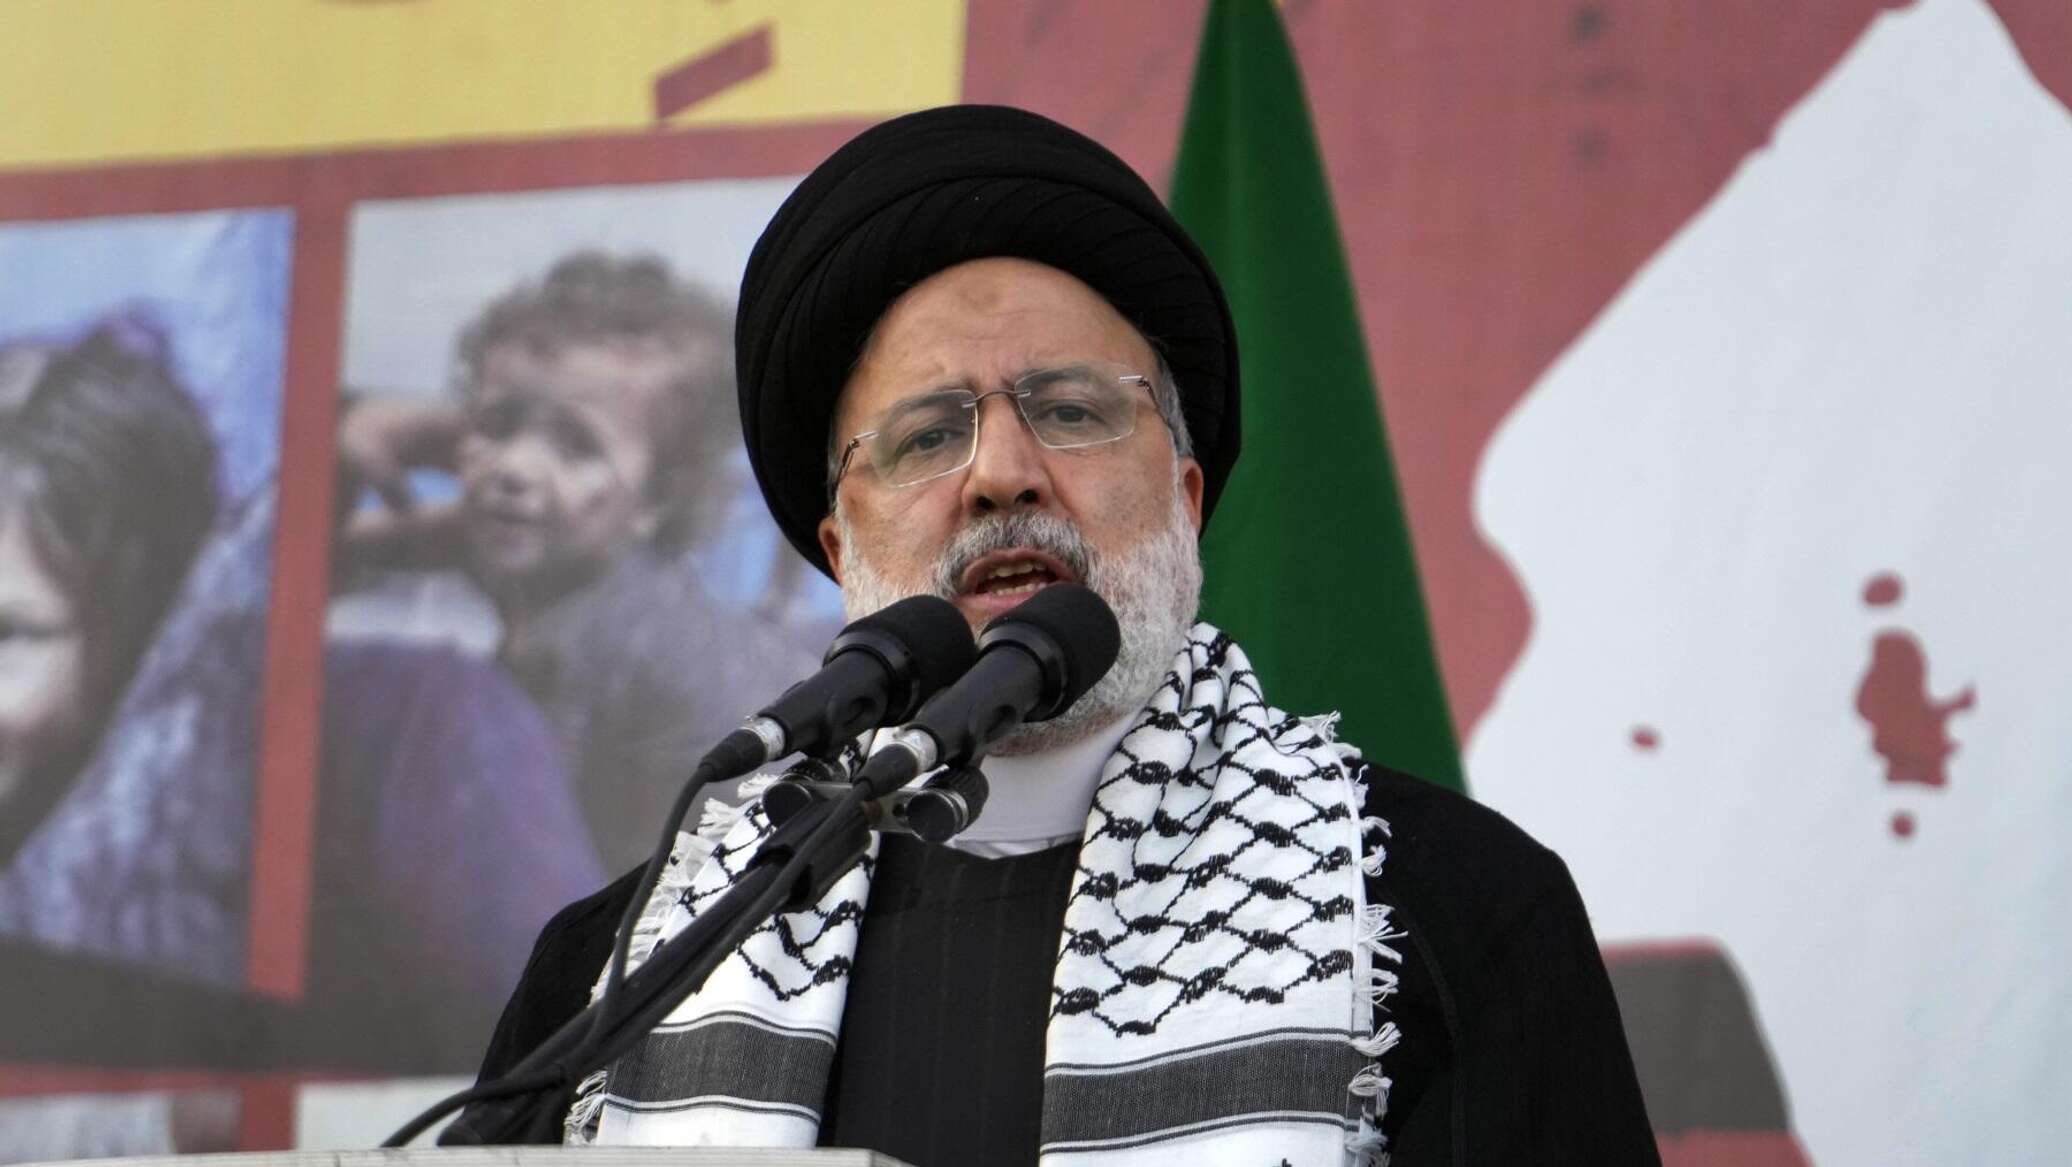 الرئيس الإيراني يصف الدول الداعمة لإسرائيل بـ"أسوأ الكائنات على الكرة الأرضية"